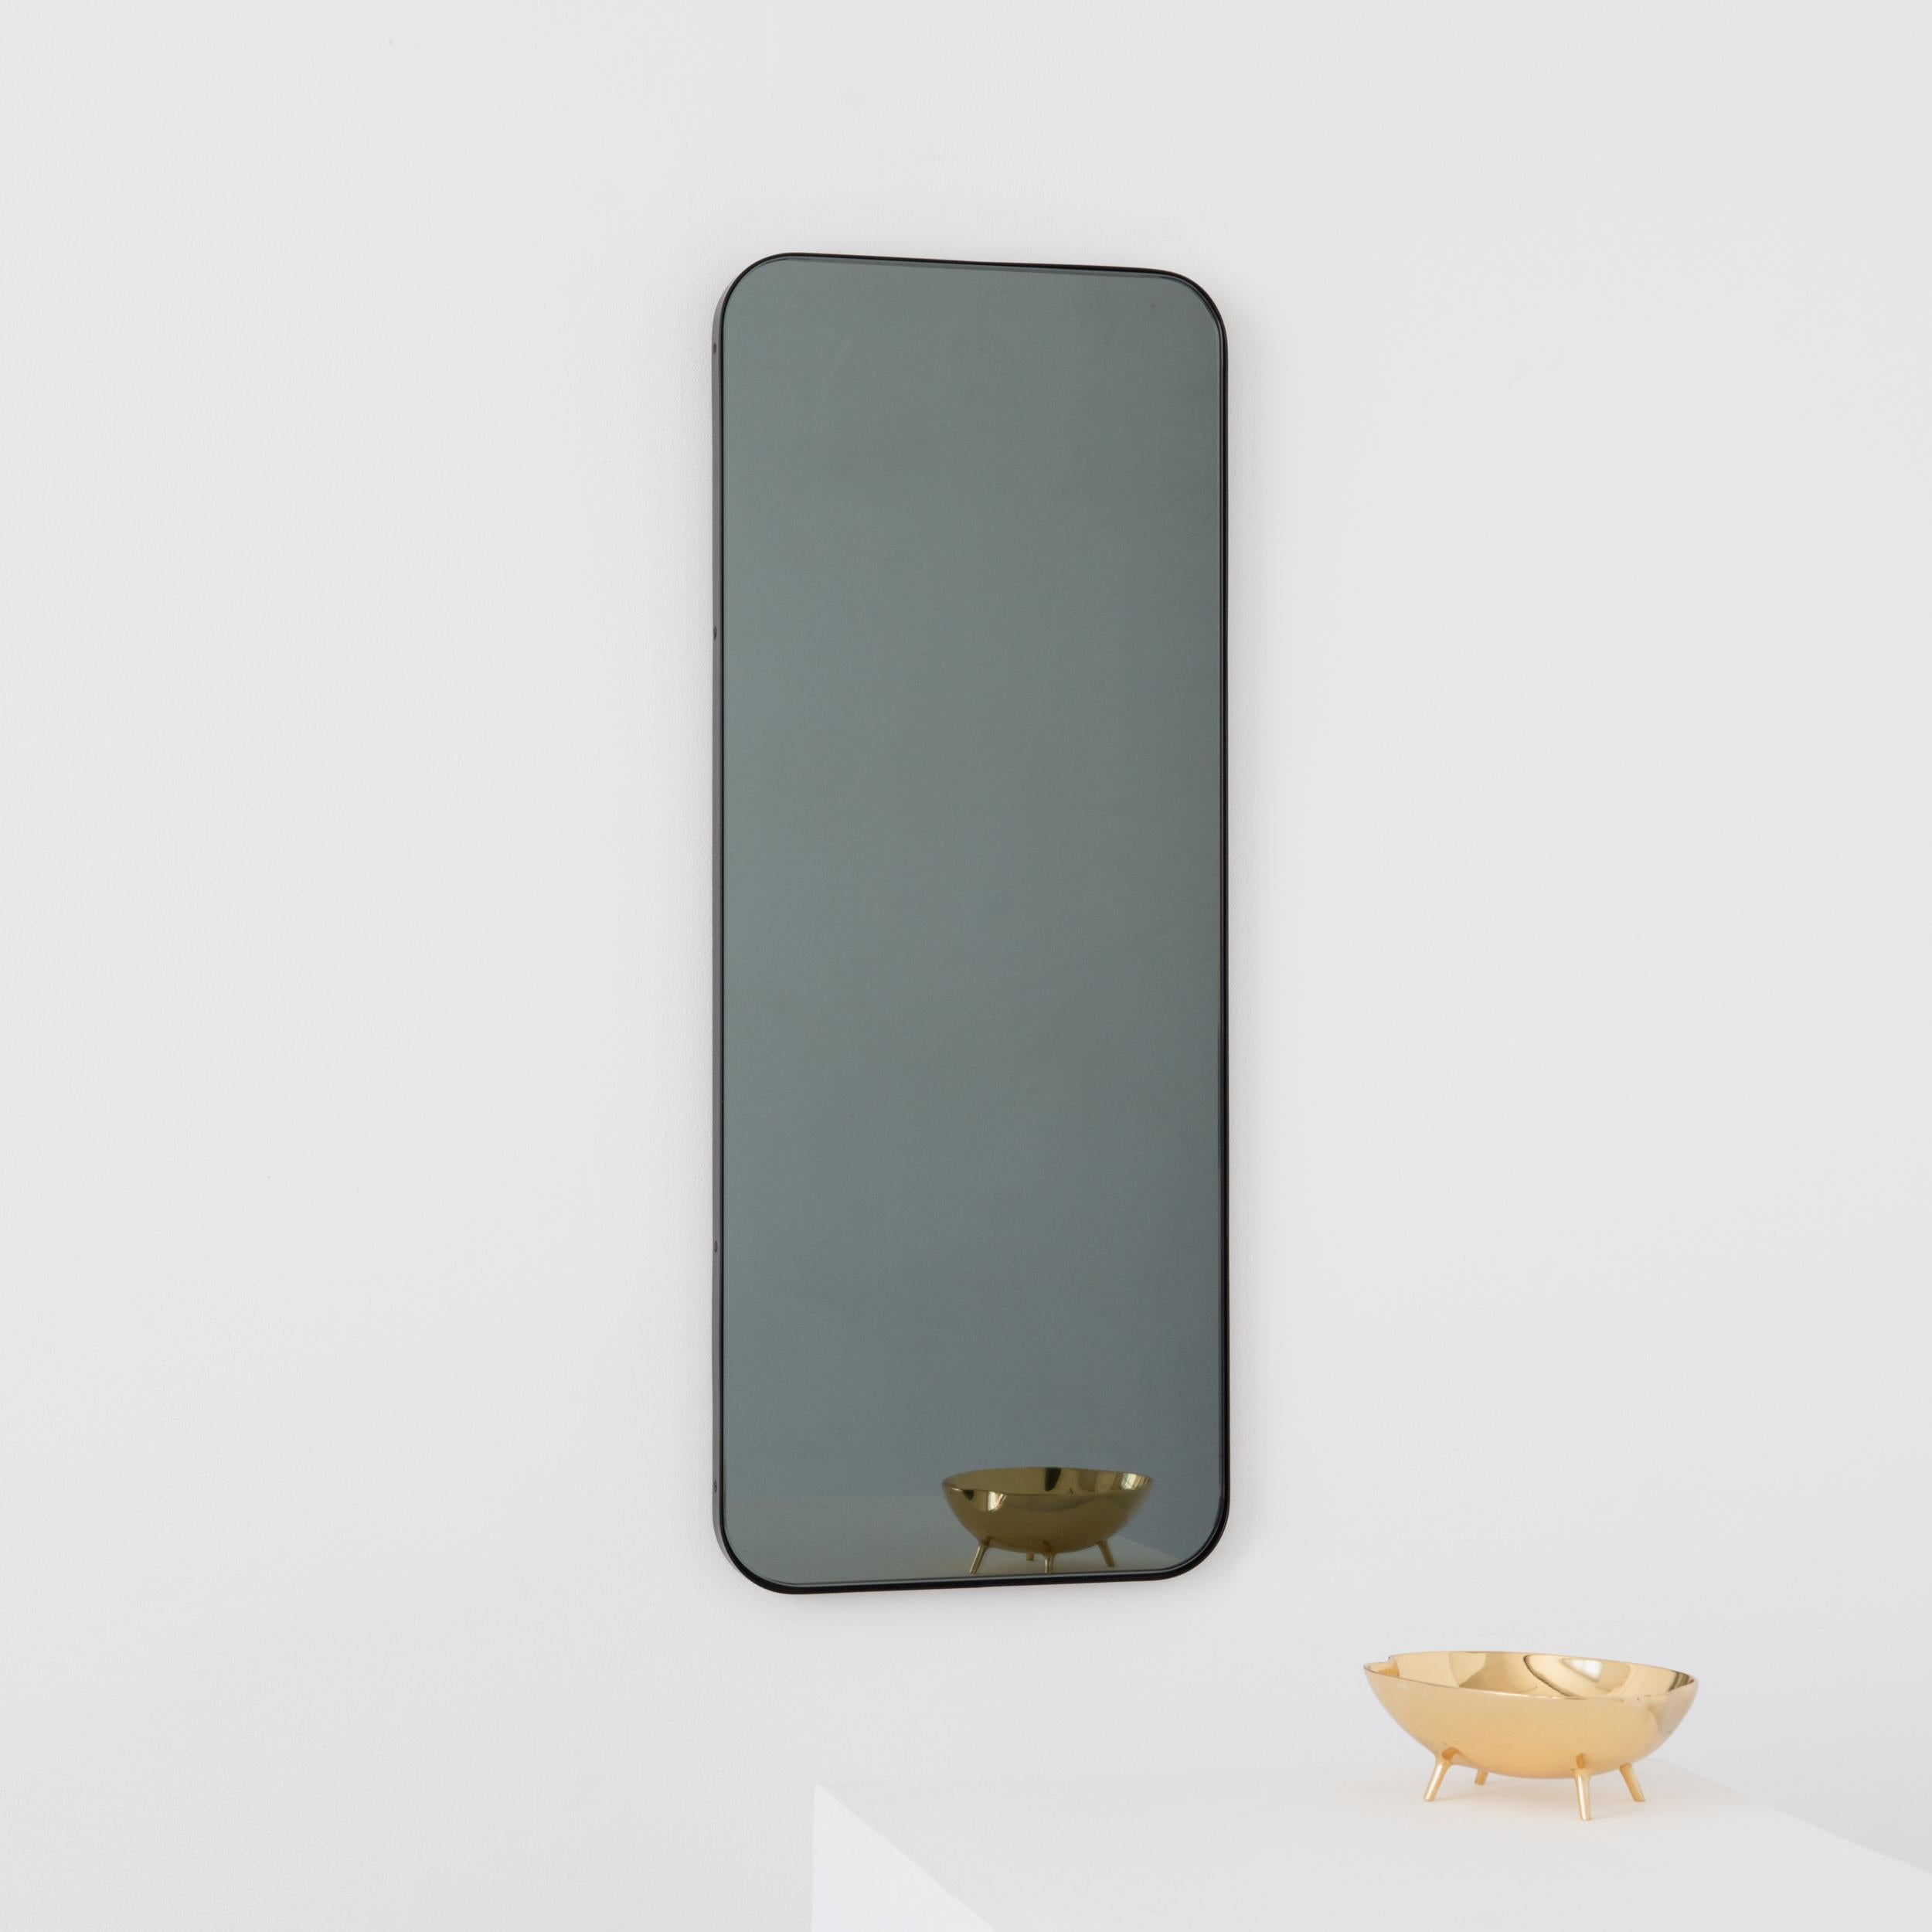 Britannique Quadris Black Tinted Rectangular Minimalist Mirror with a Black Frame, XL (miroir minimaliste rectangulaire teinté noir avec cadre noir) en vente